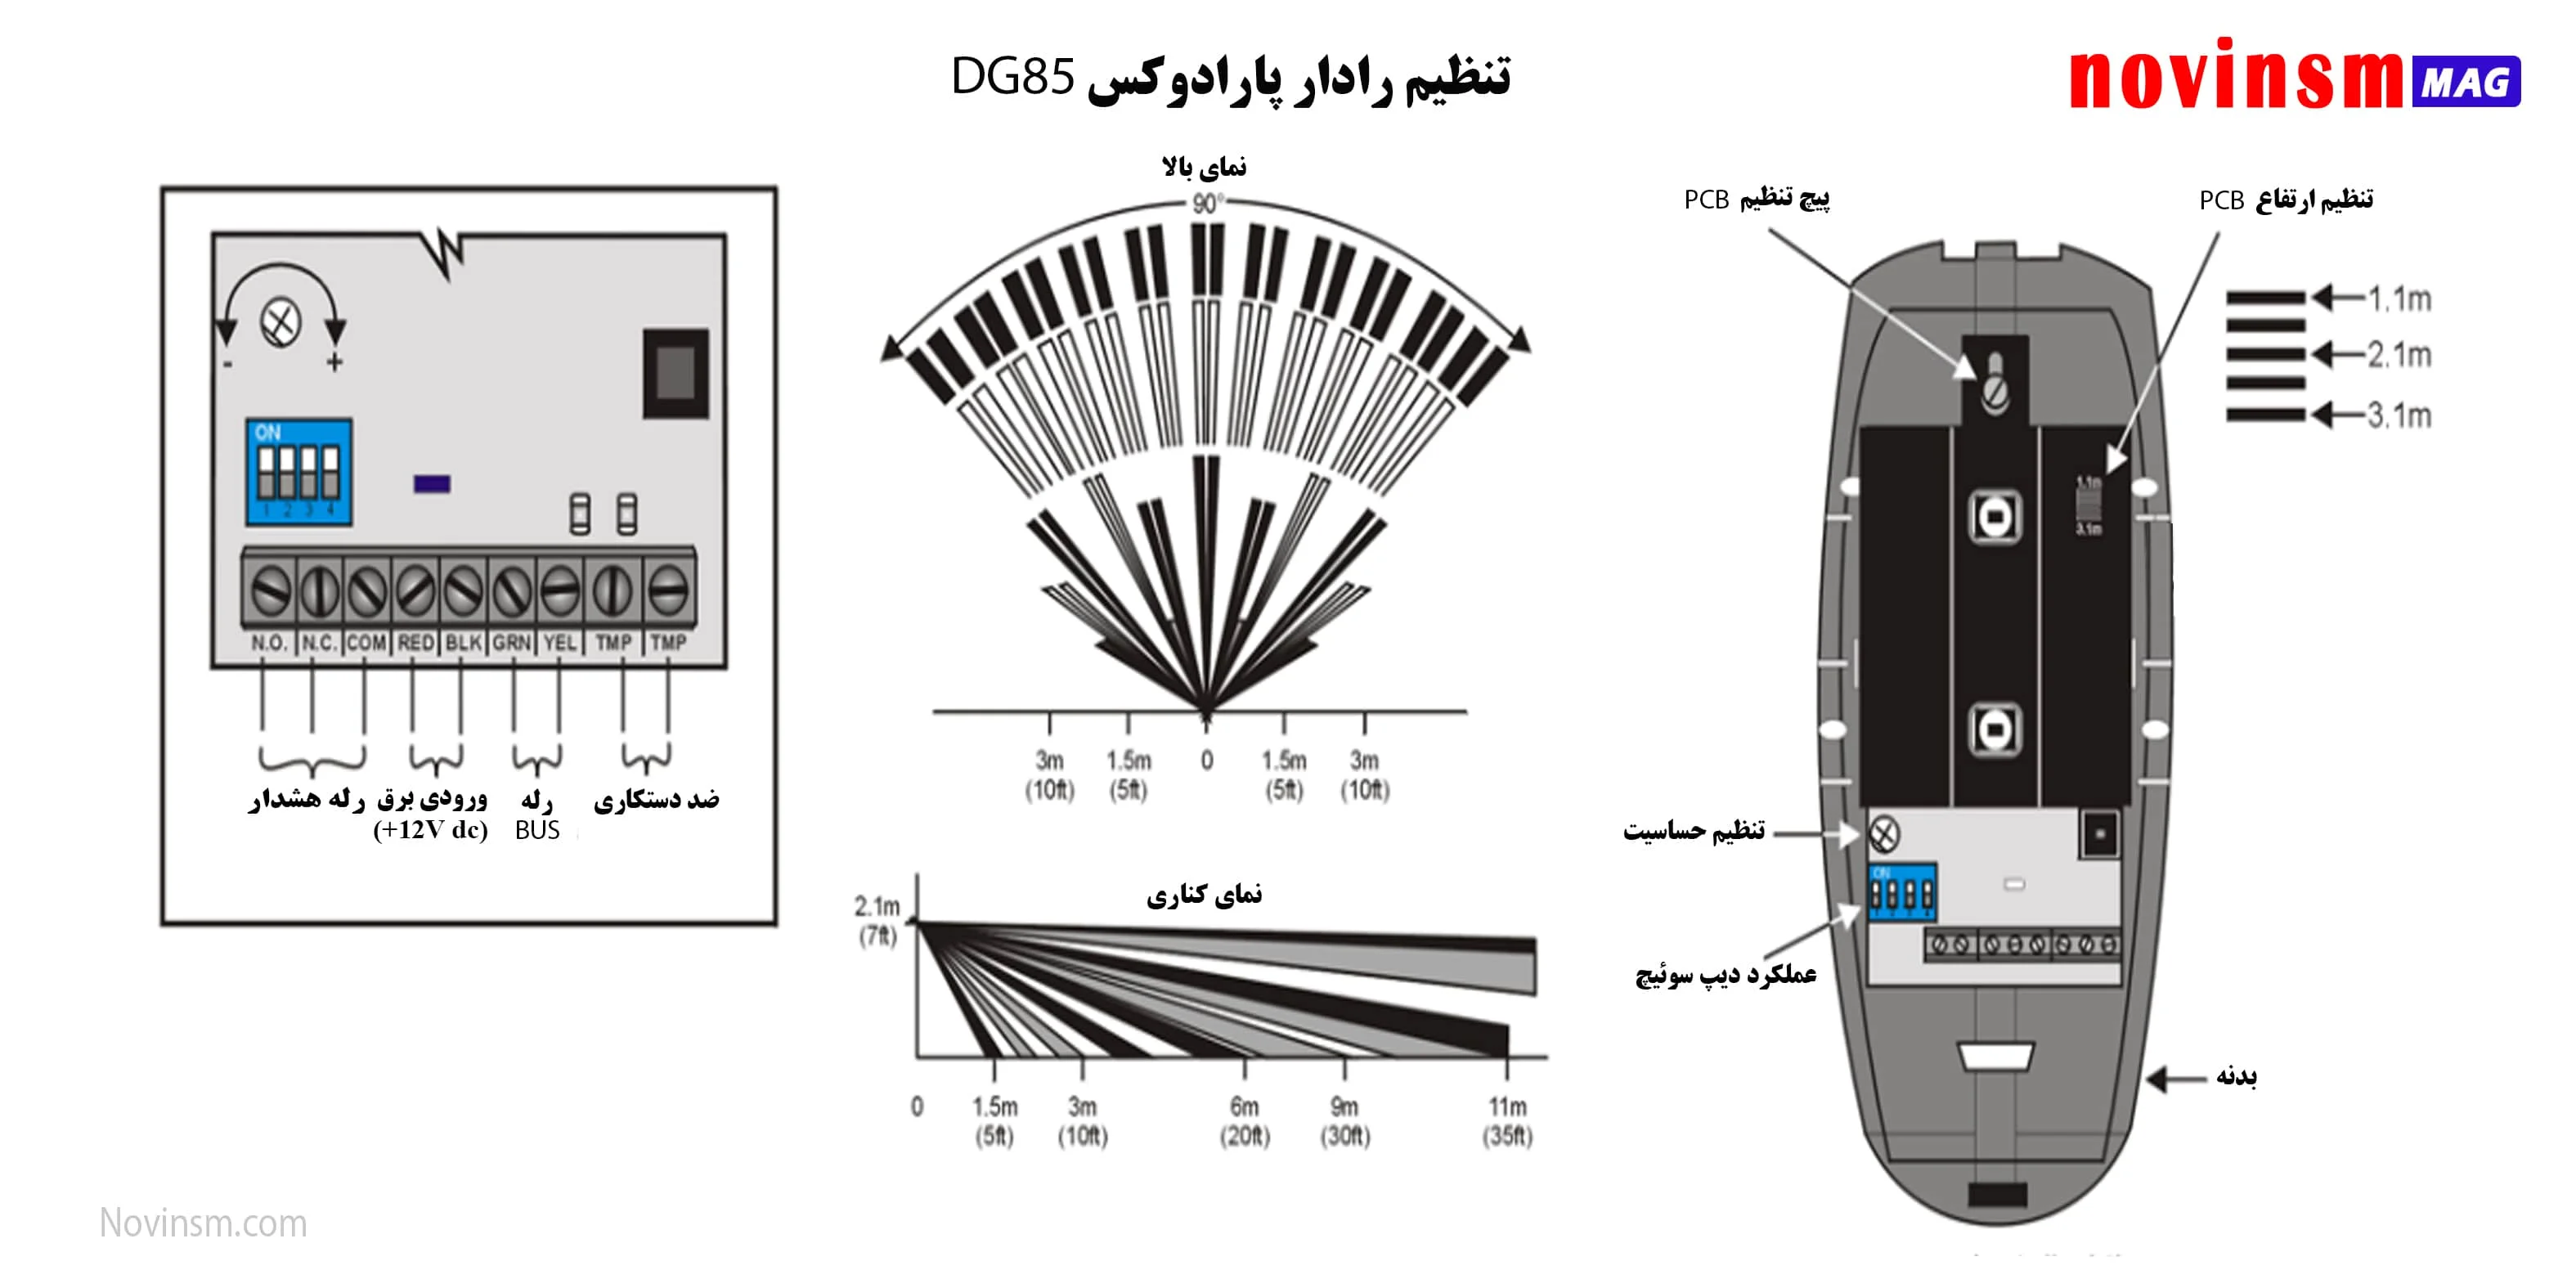 تنظیم حساسیت رادار دزدگیر اماکن پارادوکس مدل DG85 | PARADOX DG85